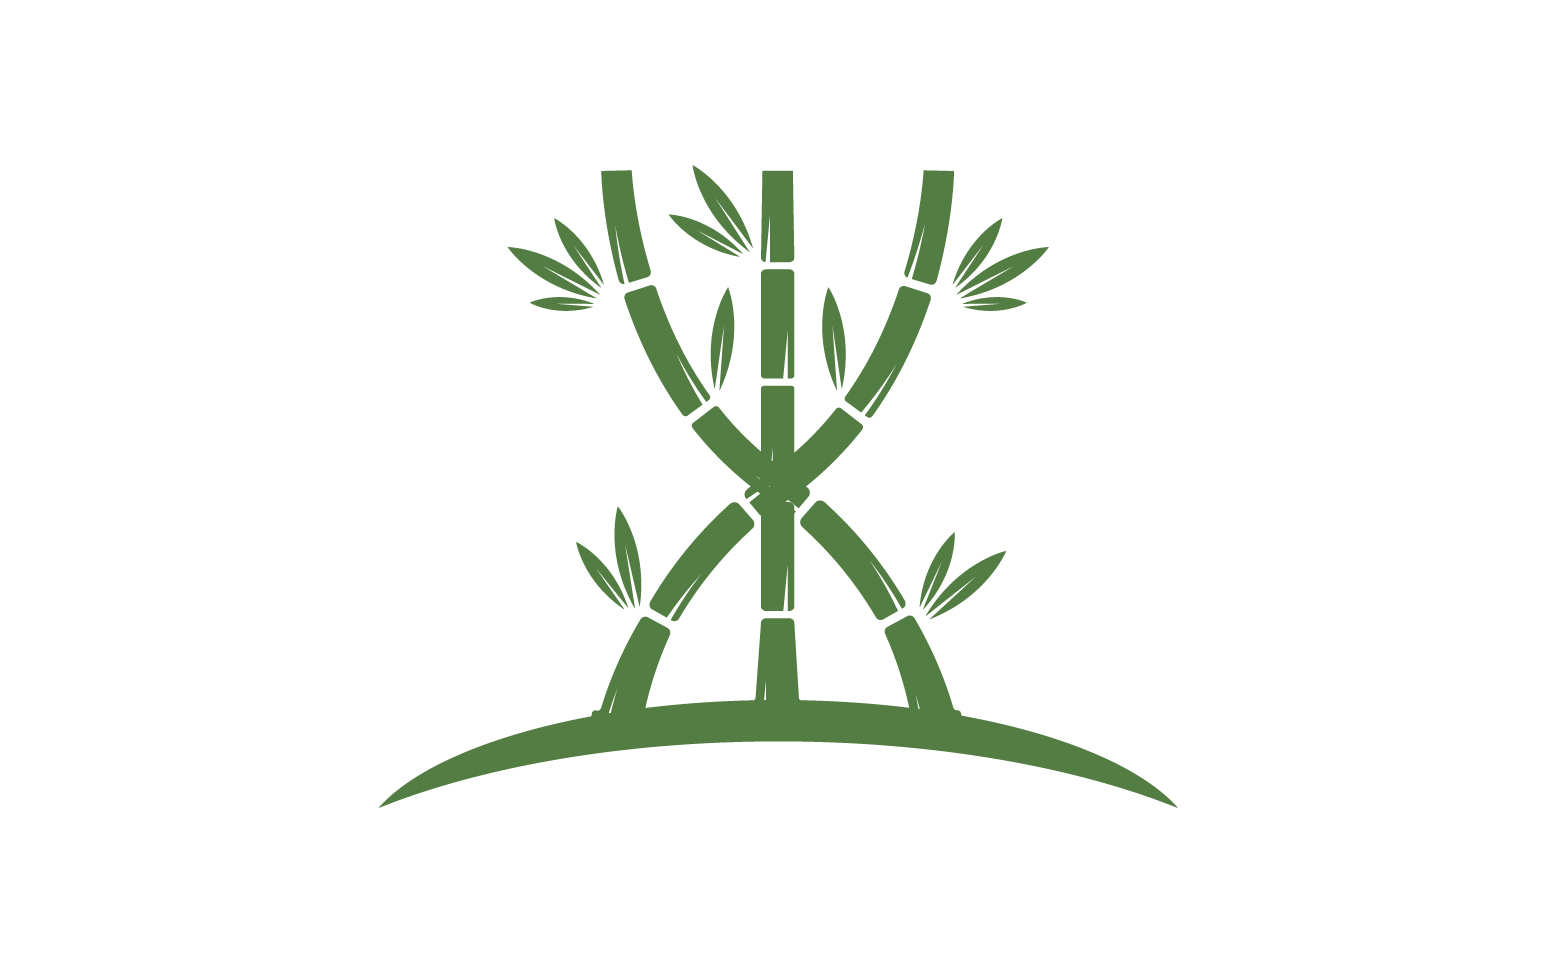 Bamboo tree logo vector v.14